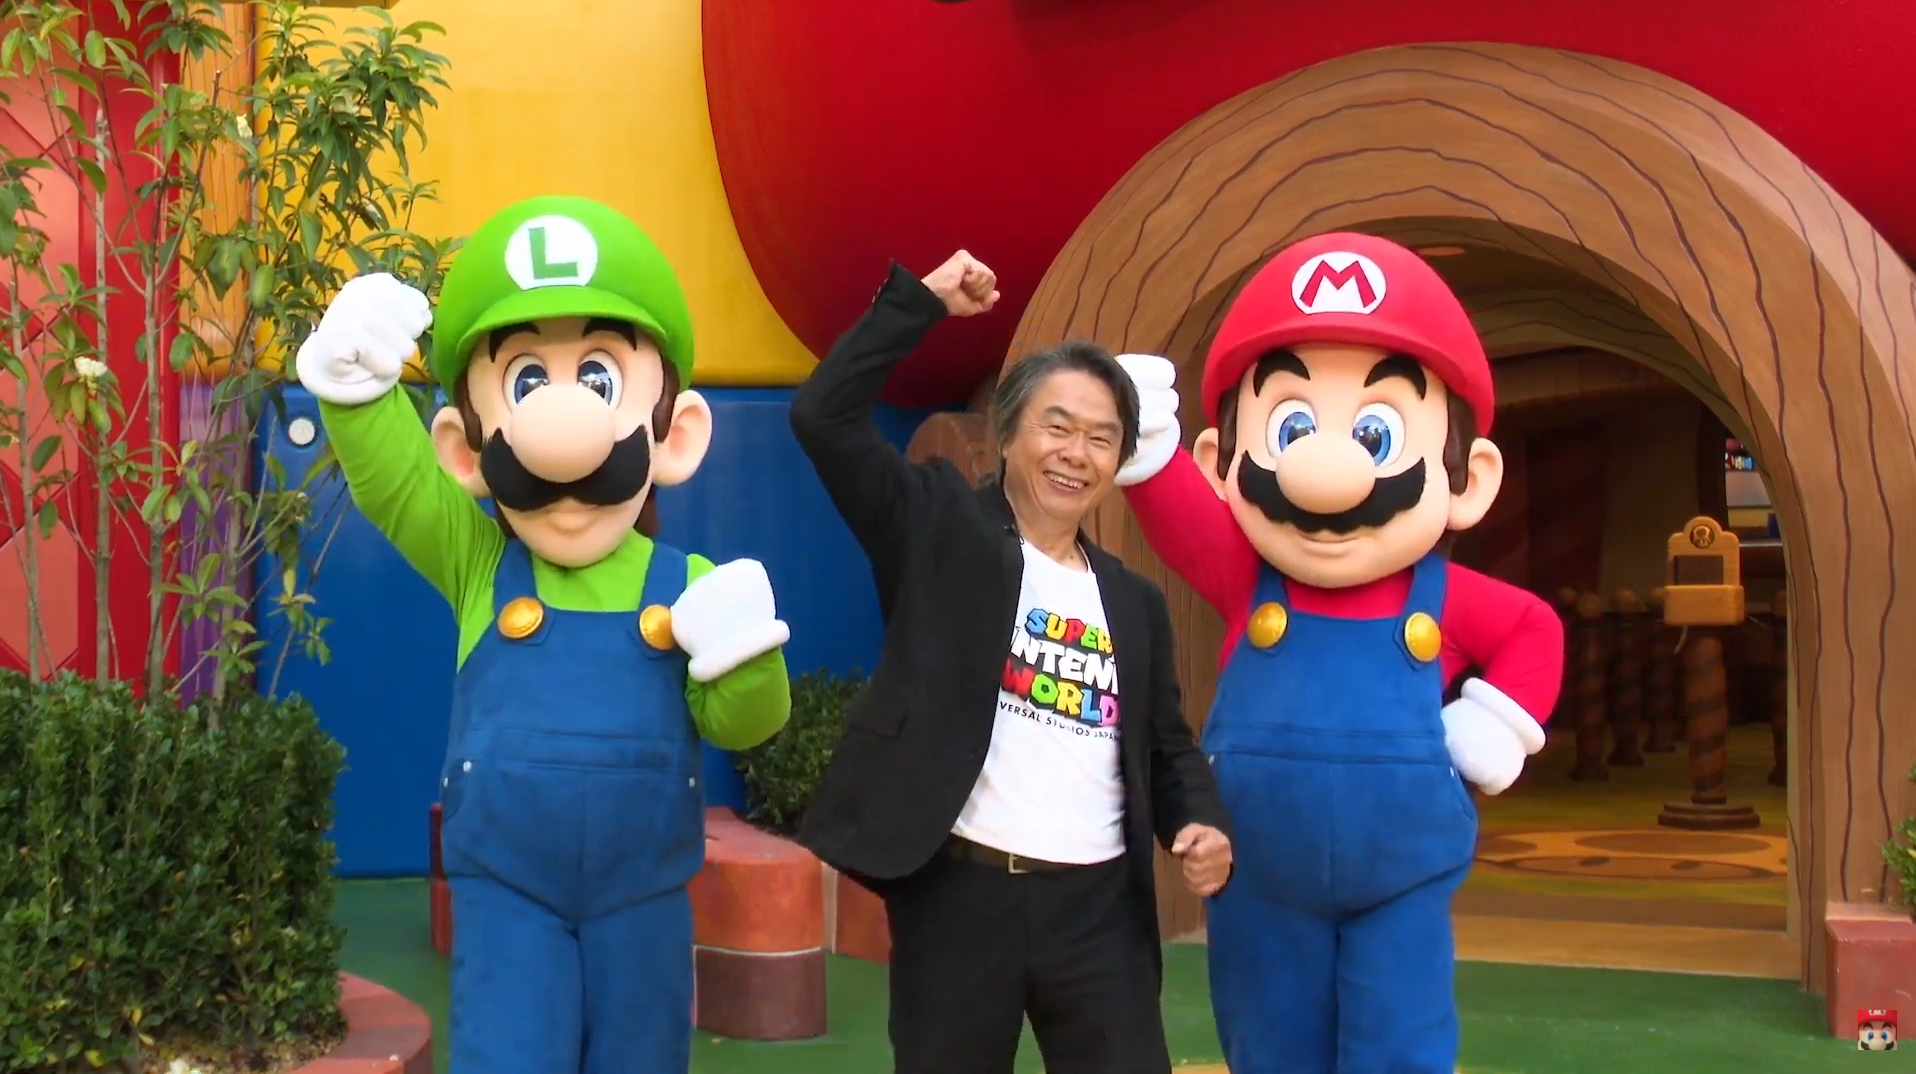 Shigeru Miyamoto Shares Nintendo Secrets